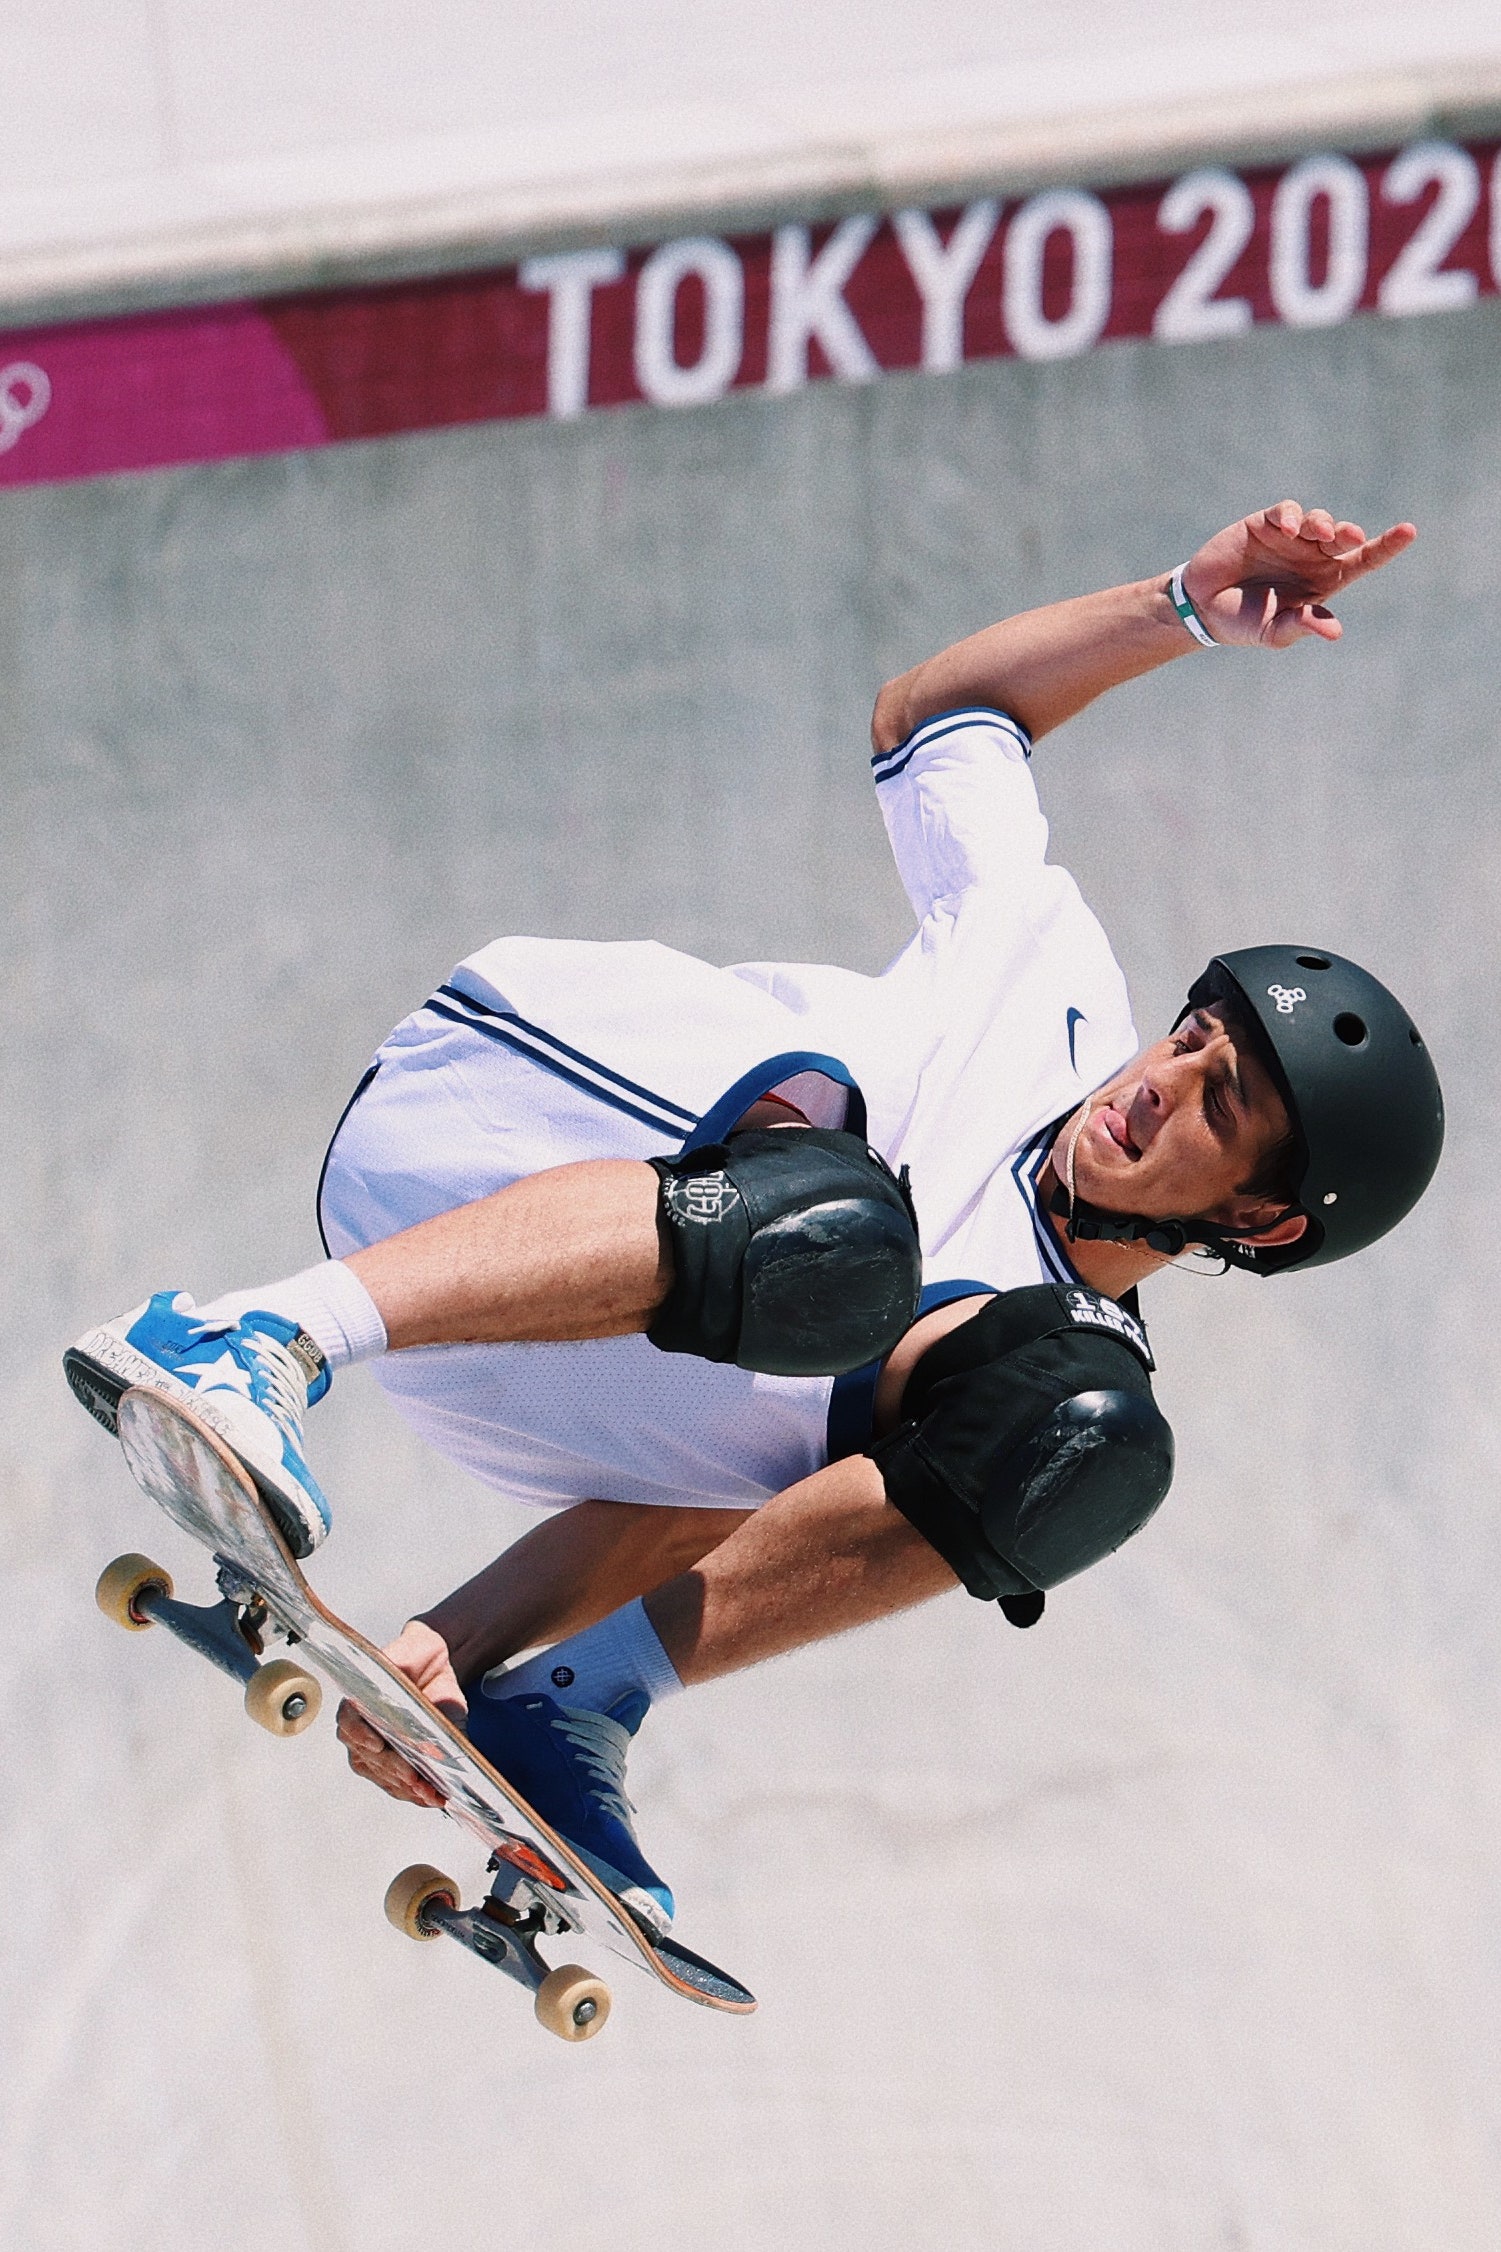 Скейтбордист Кори Джуно выступал на Олимпийских играх в Токио в кроссовках Golden Goose. Что надо о них знать?